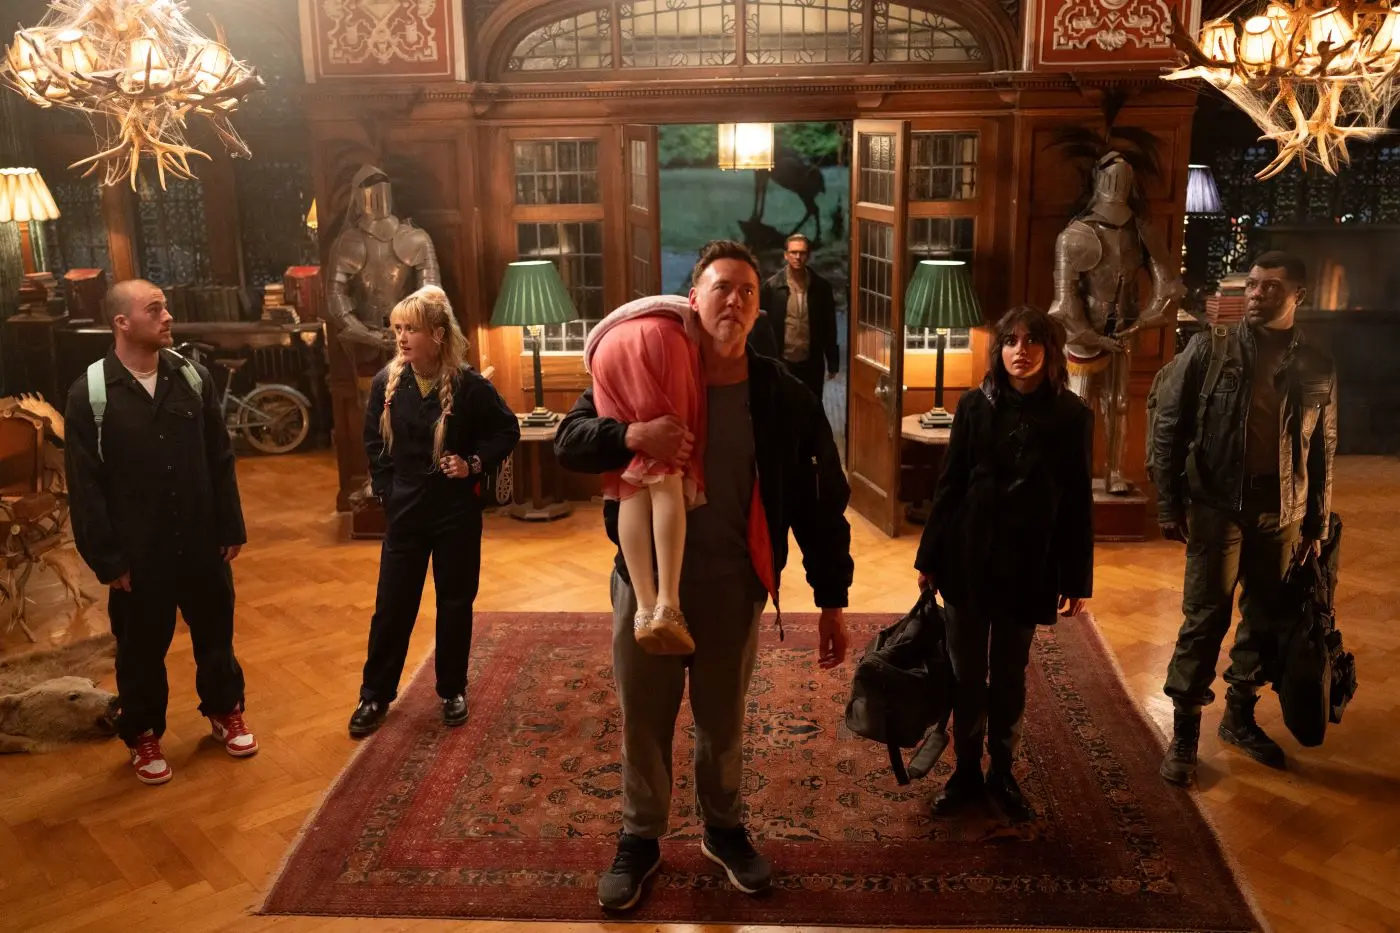 Vorsaal einer altmodisch eingerichteten Villa, sechs dunkel gekleidete Menschen betreten den Raum, mittig steht ein Mann, der ein Mädchen in weißer Strumpfhose und rosafarbenen Rock über seine Schulter trägt